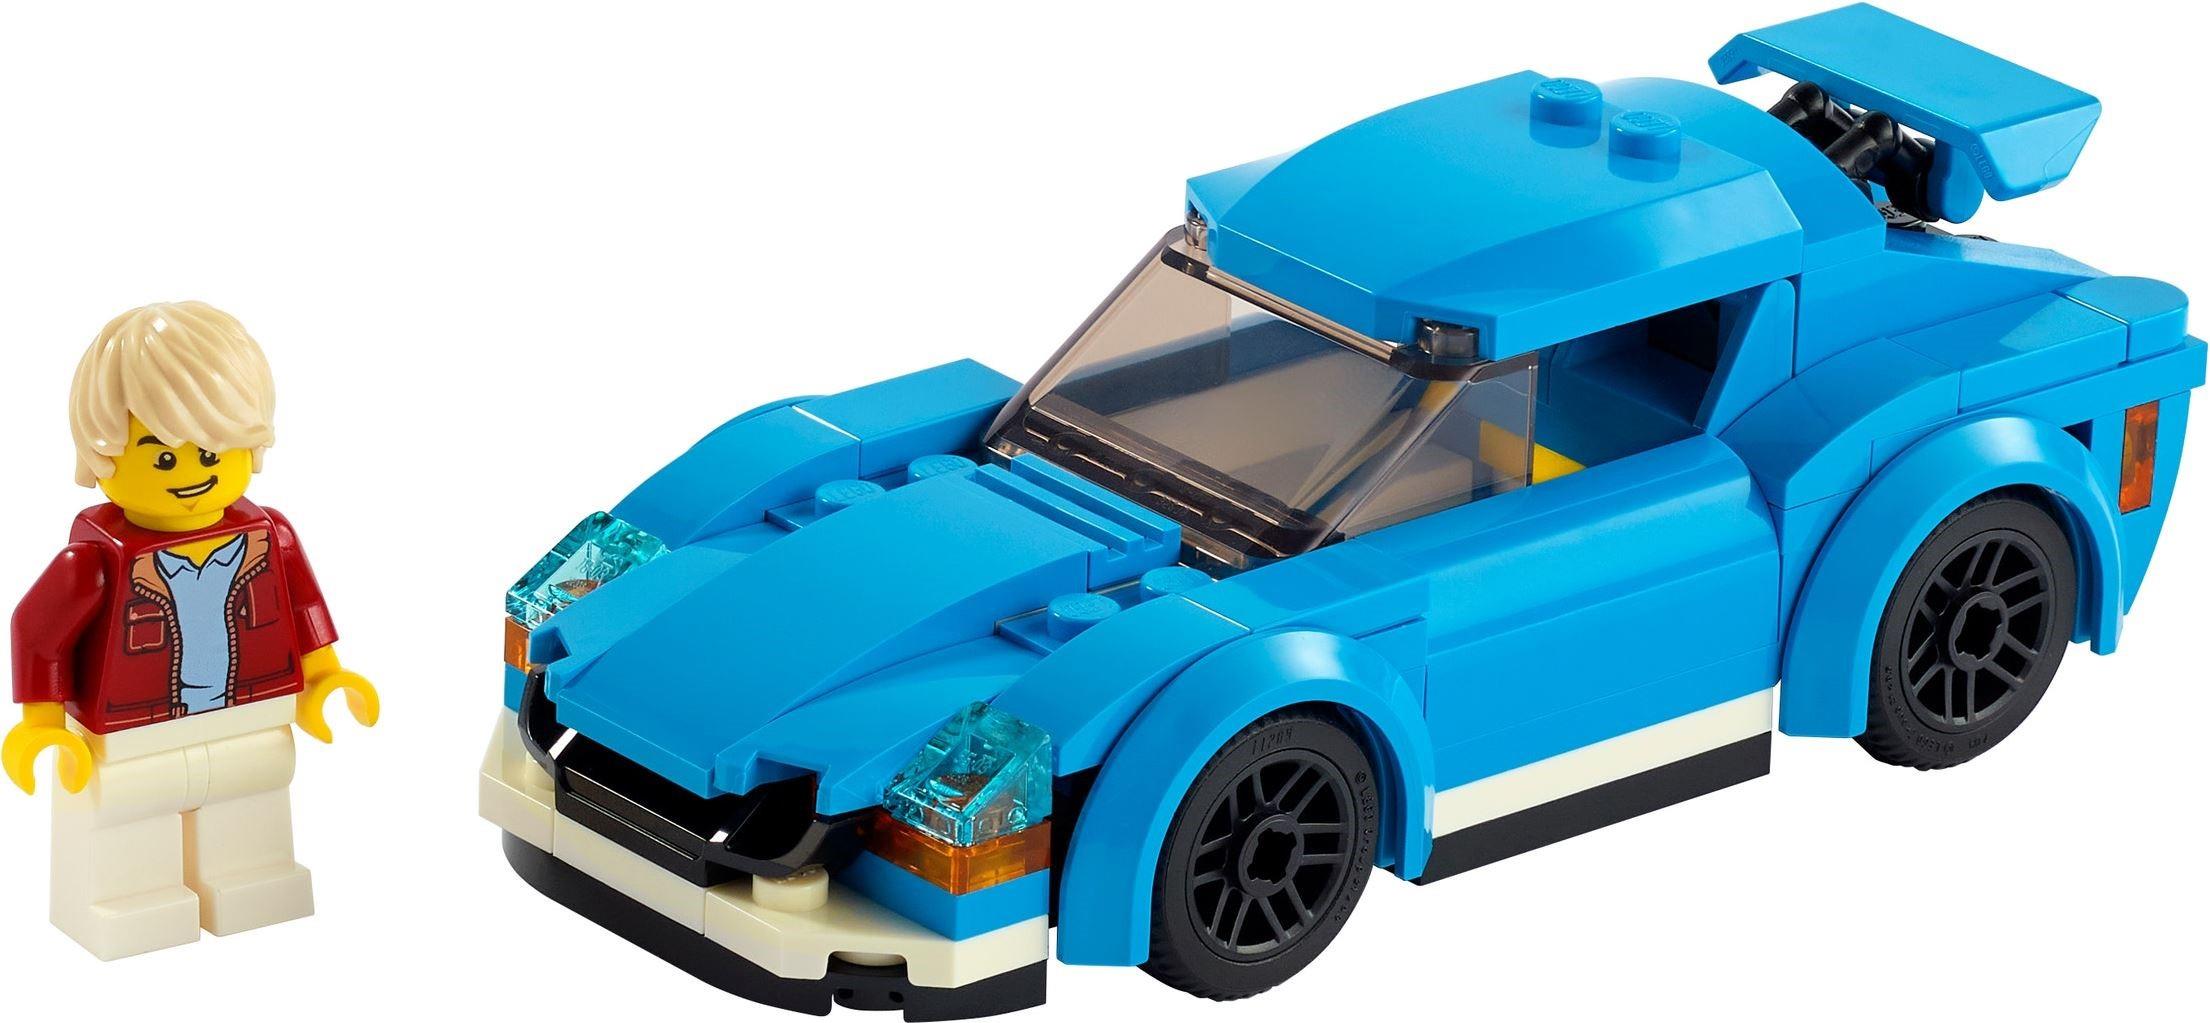 LEGO City 60304 Road Plates Building Toy Set Sealed Box NIB Unopened